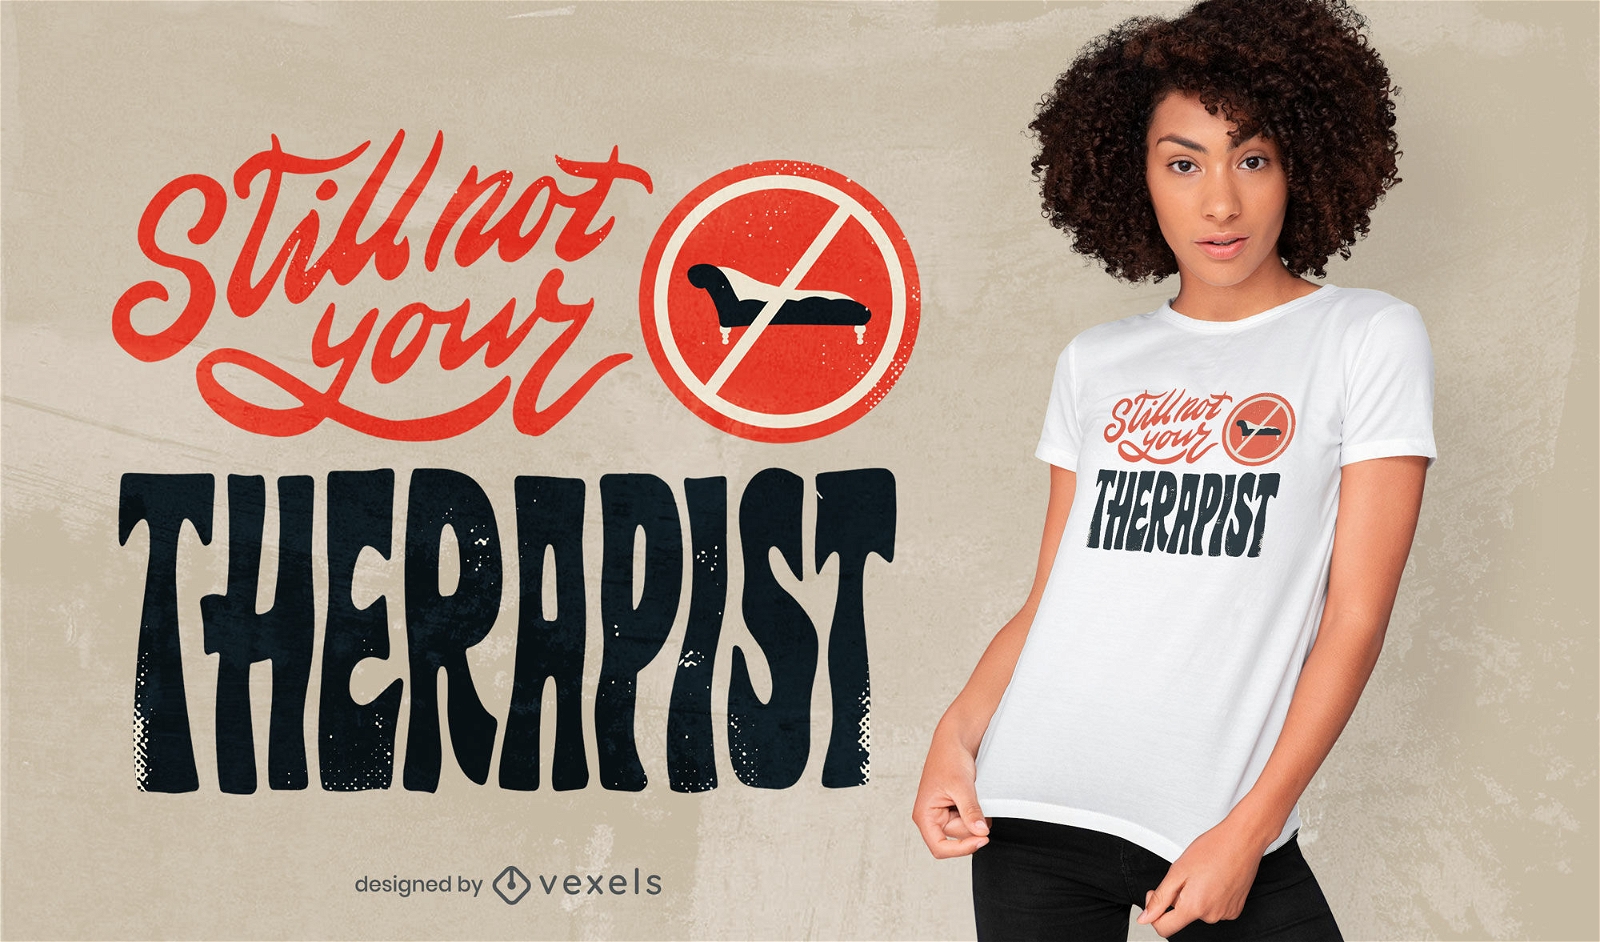 Legal, não é o design de sua t-shirt de terapeuta